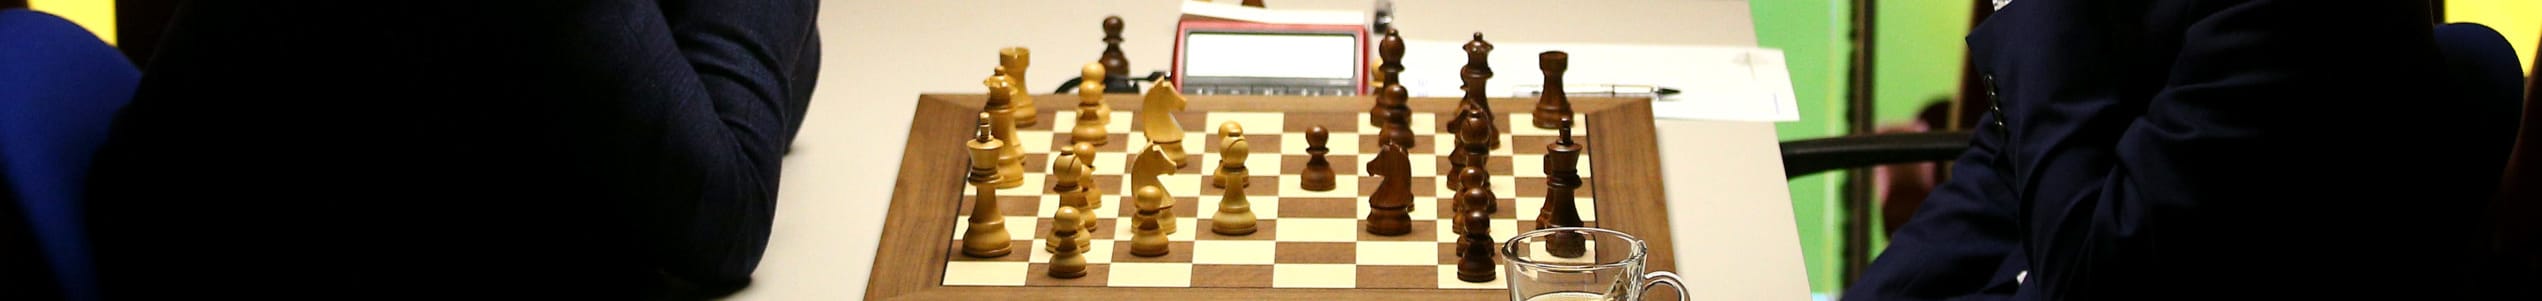 Σκάκι: Το μεγαλύτερο online τουρνουά στην ιστορία!